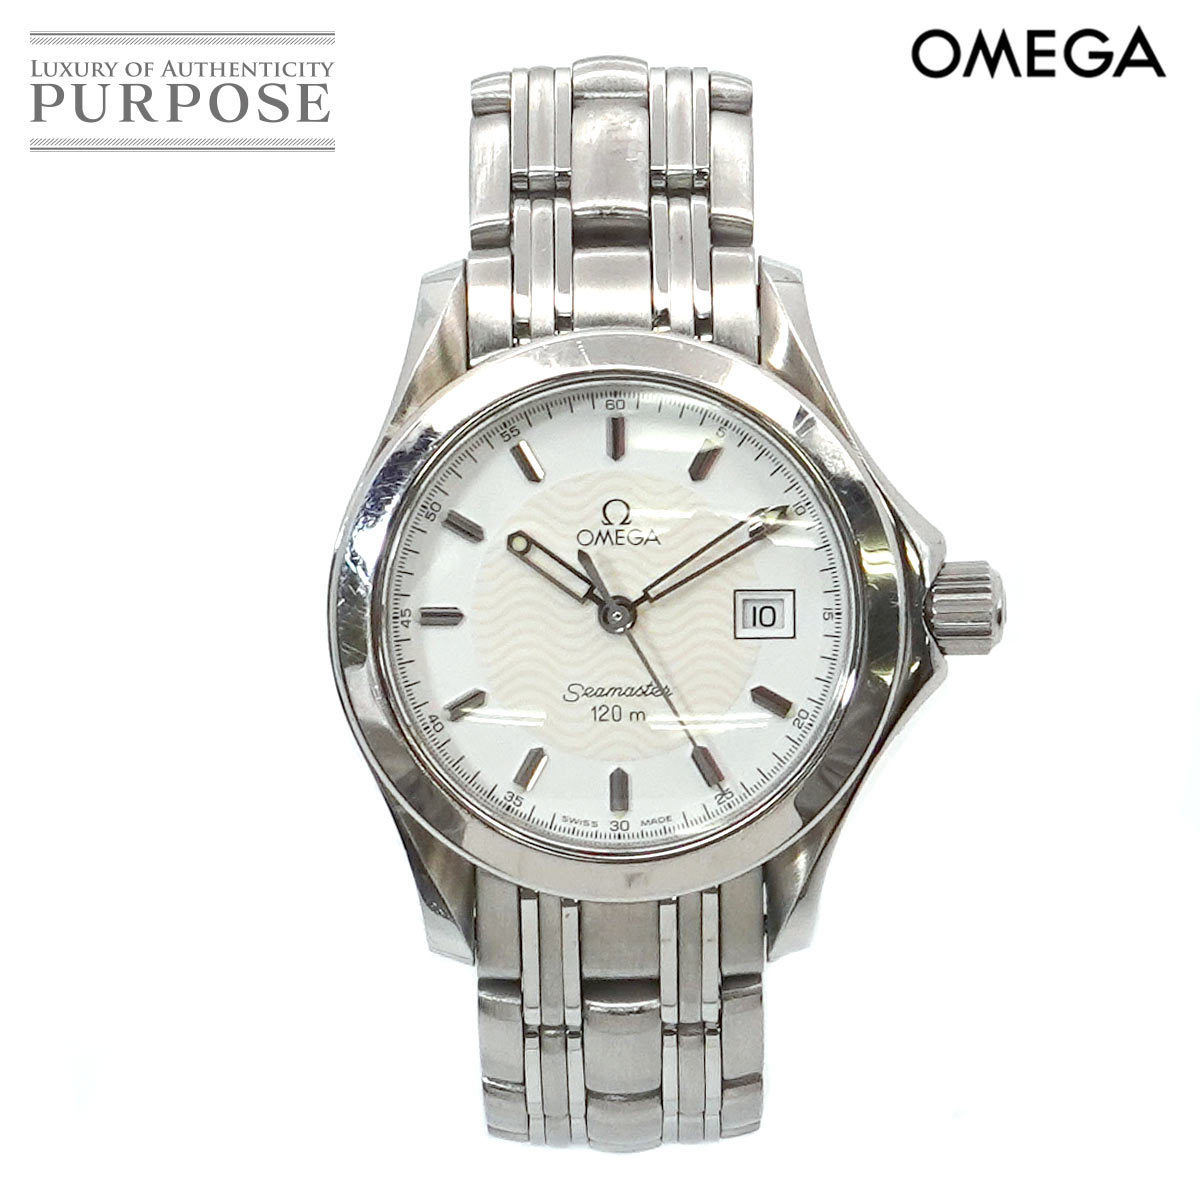 オメガ OMEGA シーマスター 120m 2581 21 レディース 腕時計 デイト ホワイト 文字盤 クォーツ ウォッチ Seamaster  90161912